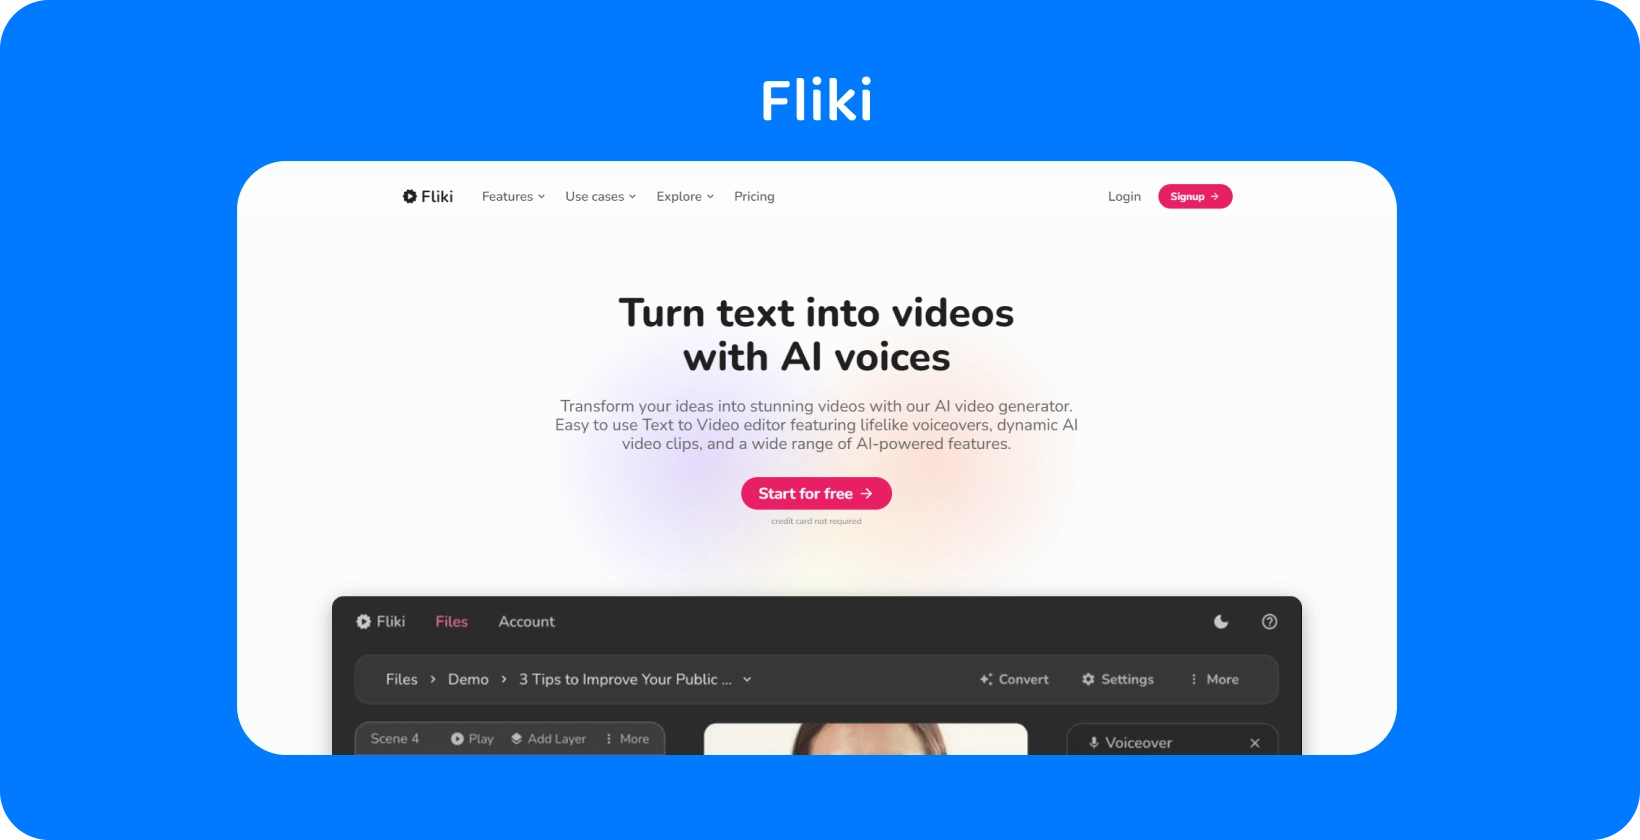 Stran platforme Fliki prikazuje, kako pretvoriti besedilo v videoposnetke s AI glasovi, kar ponuja izkušnjo urejanja besedila v video.